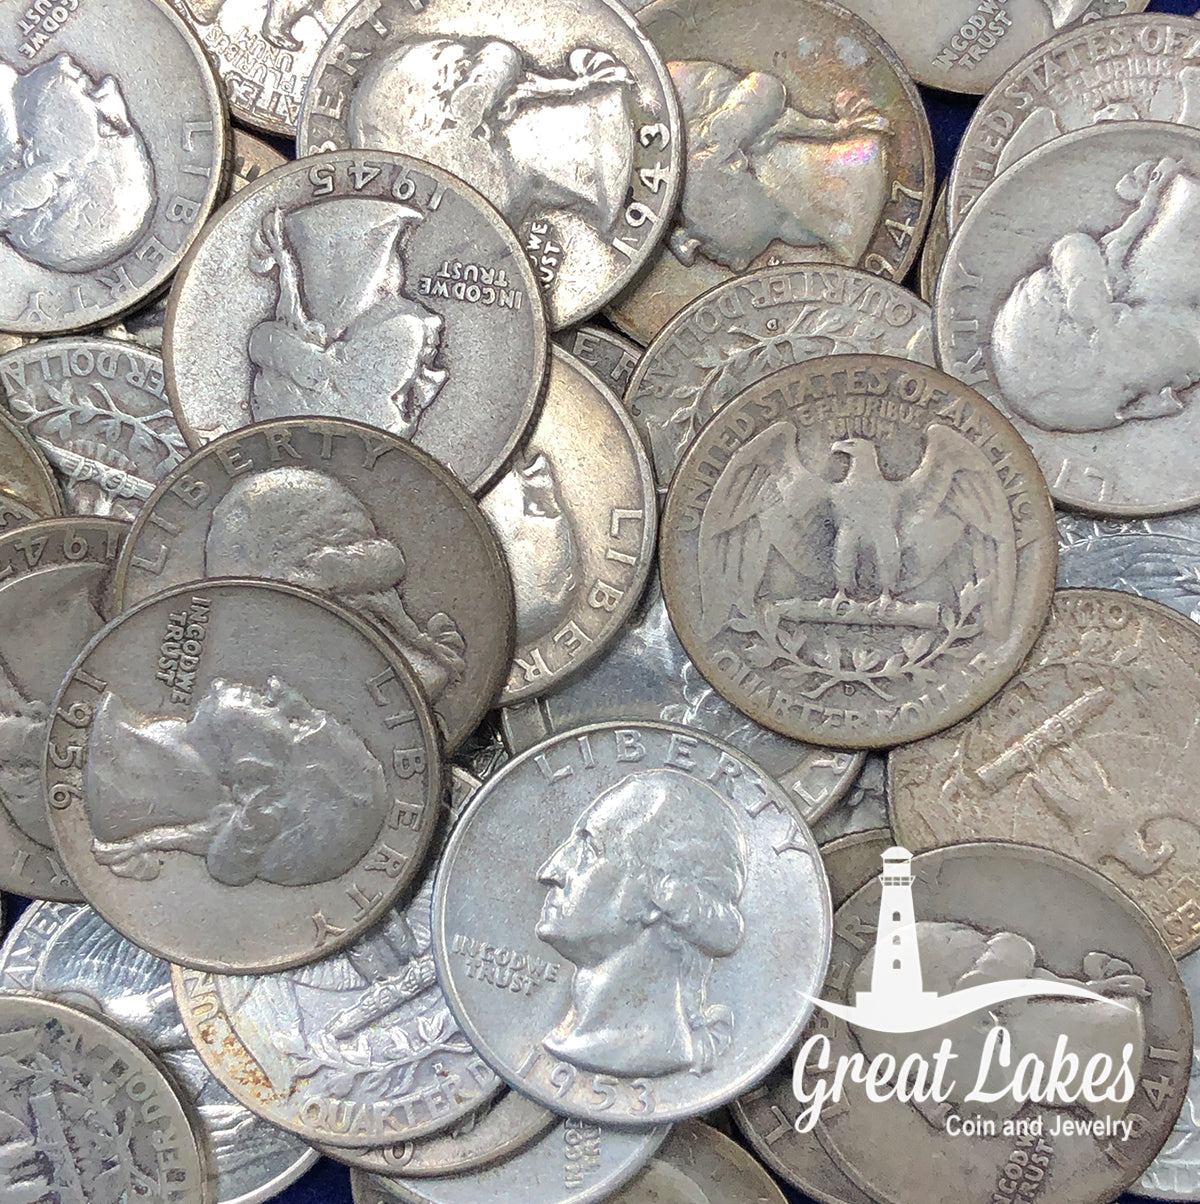 90% Silver Washington Quarters ($10 FV)